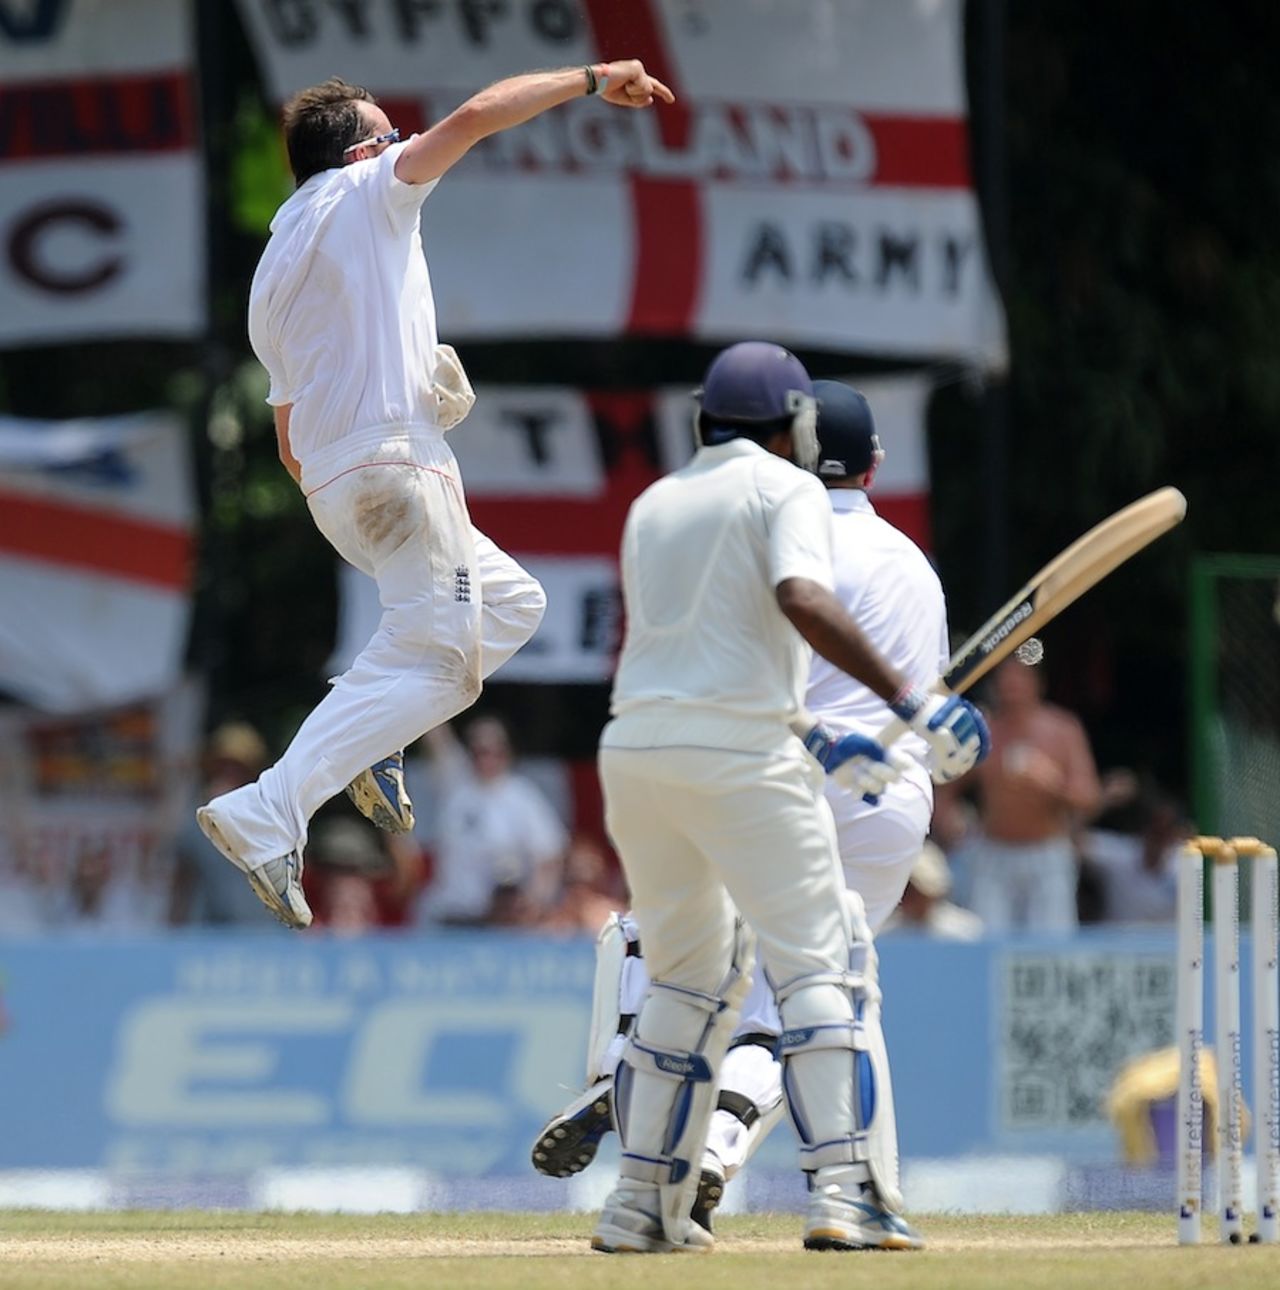 Graeme Swann is thrilled after dismissing Mahela Jayawardene, Sri Lanka v England, 2nd Test, Colombo, P Sara Oval, 5th day, April 7, 2012